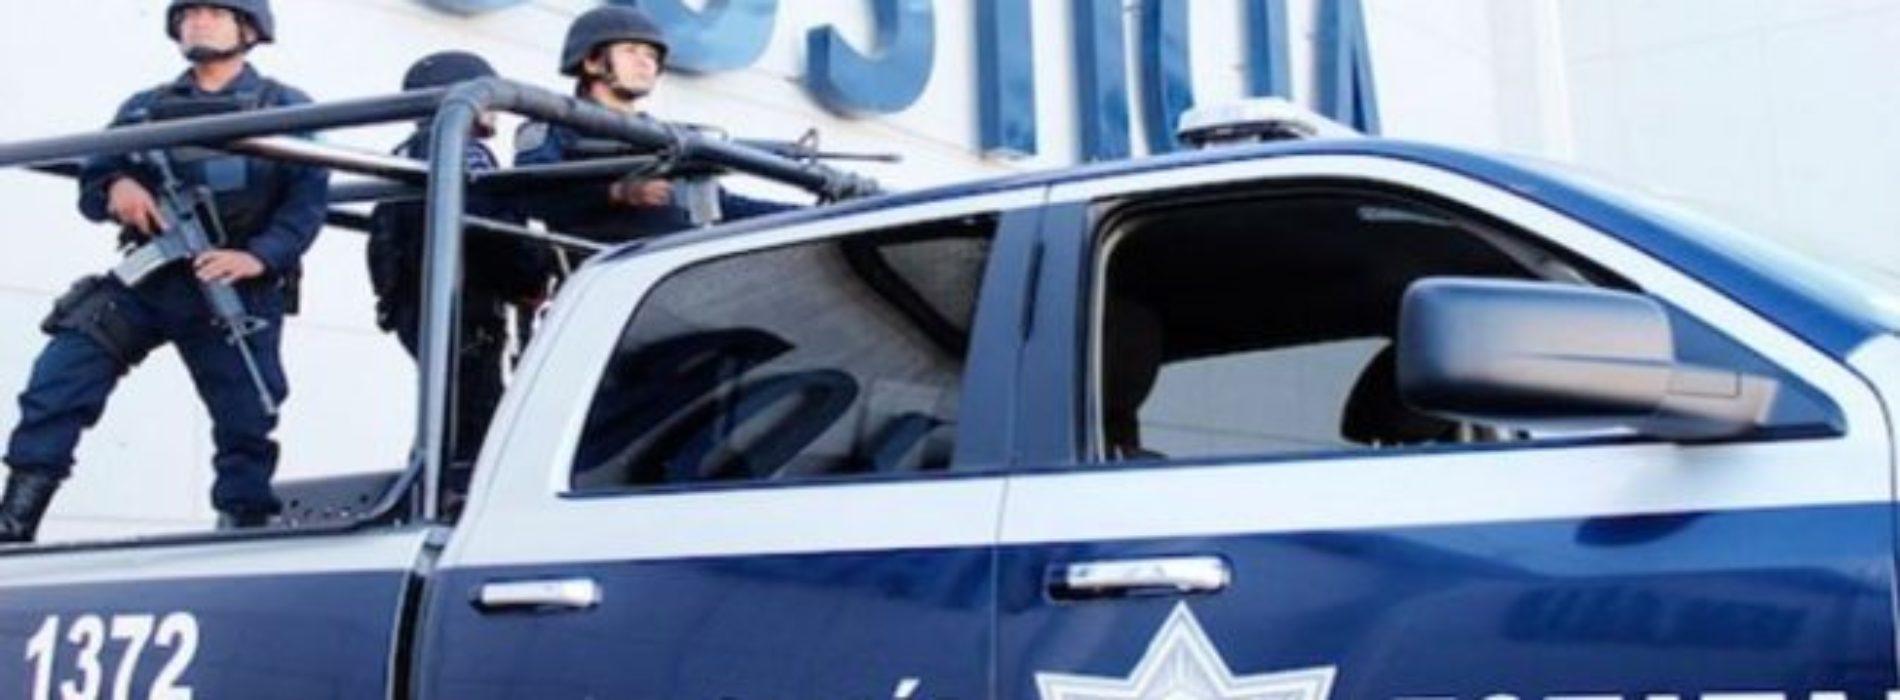 En Oaxaca han muerto ocho policías: Causa Común